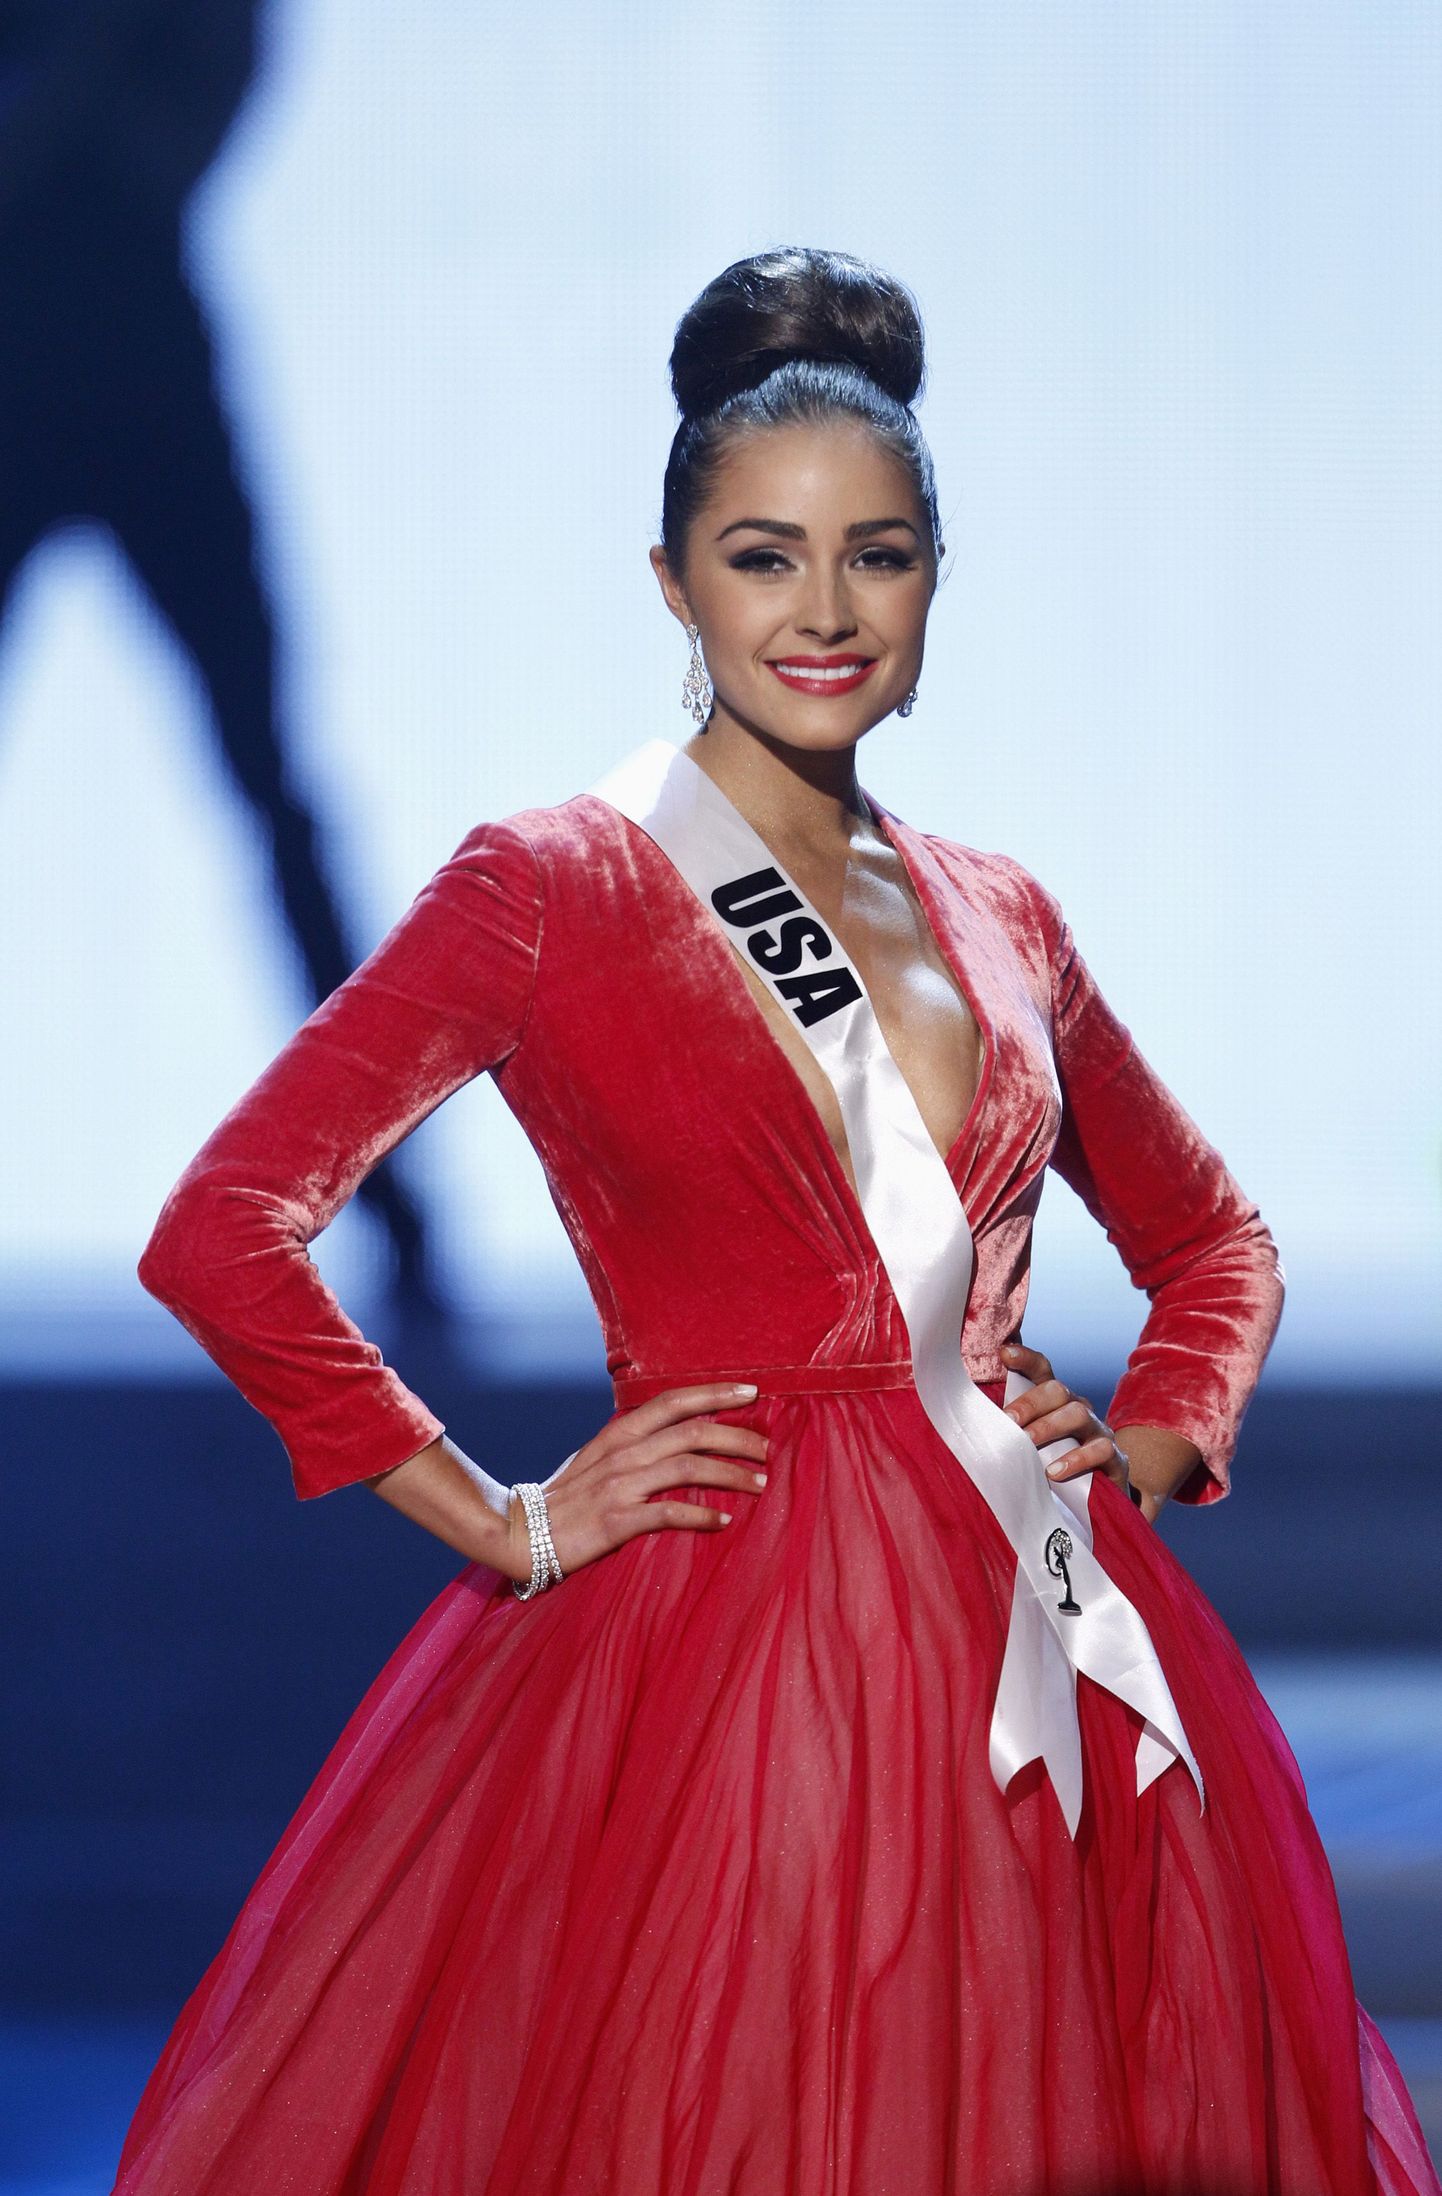 "Мисс Вселенная-2012" Оливия Калпо